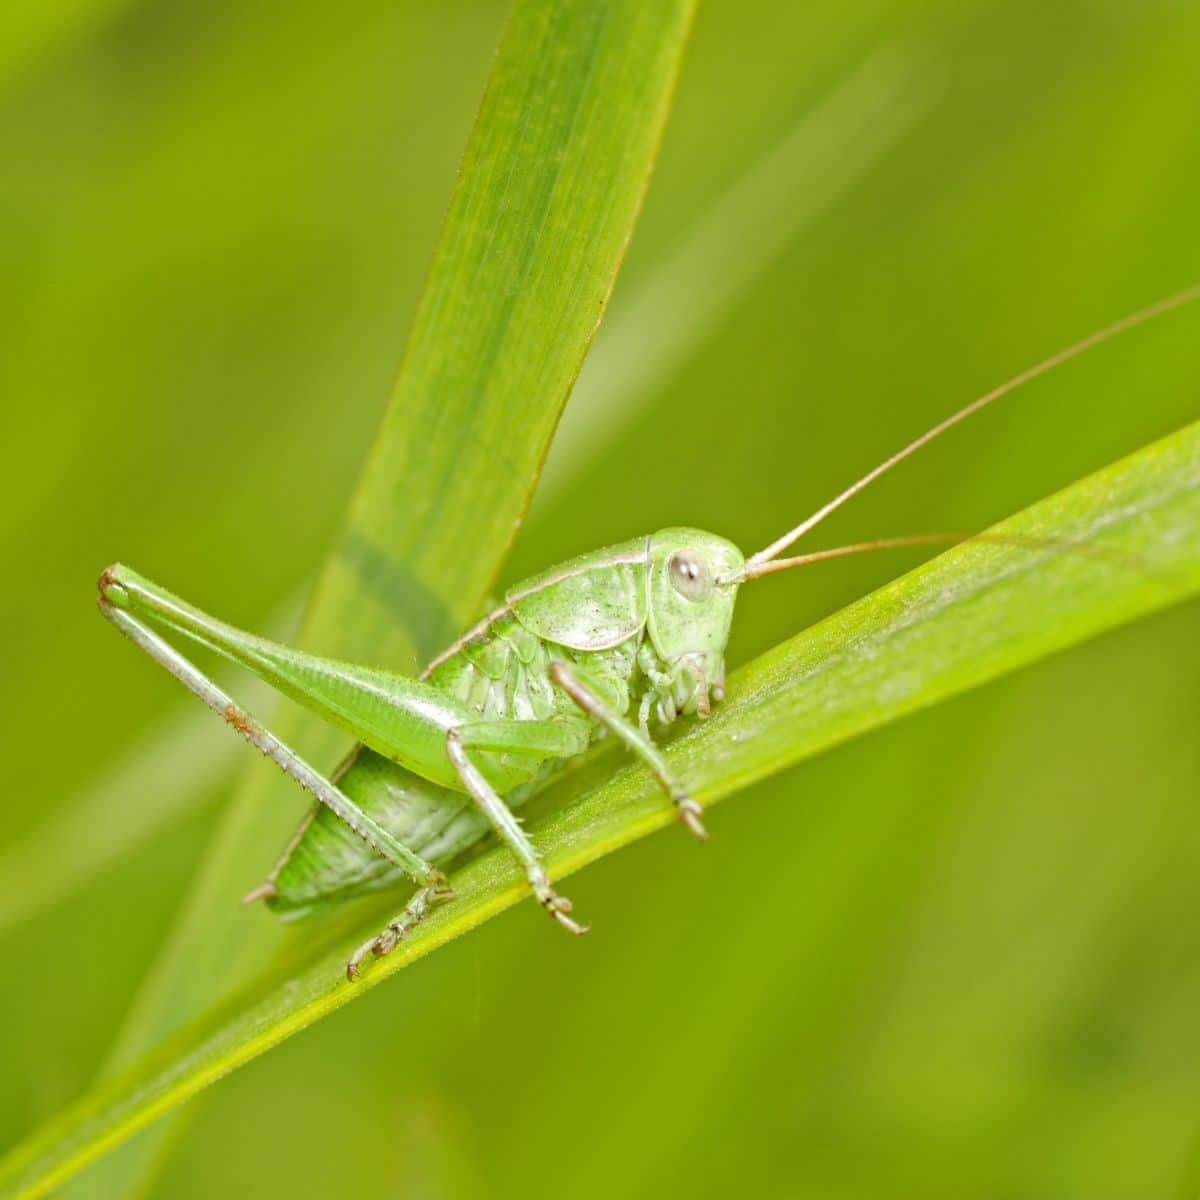 green grasshopper landed on me